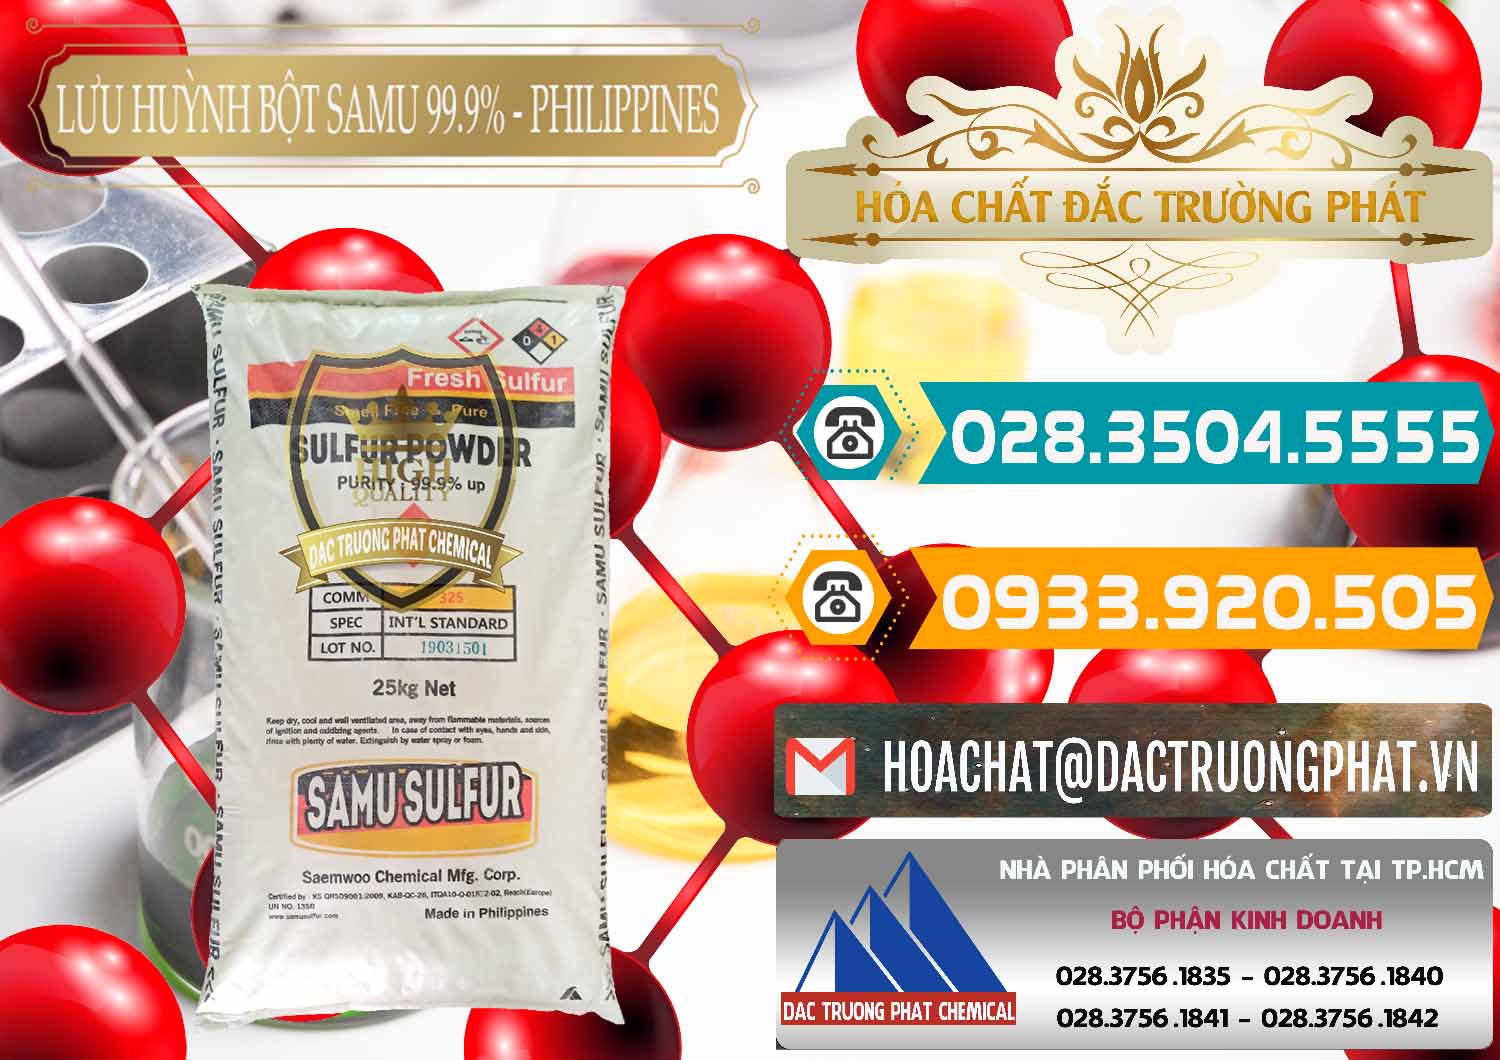 Nơi bán & phân phối Lưu huỳnh Bột - Sulfur Powder Samu Philippines - 0201 - Công ty chuyên cung cấp _ kinh doanh hóa chất tại TP.HCM - congtyhoachat.vn